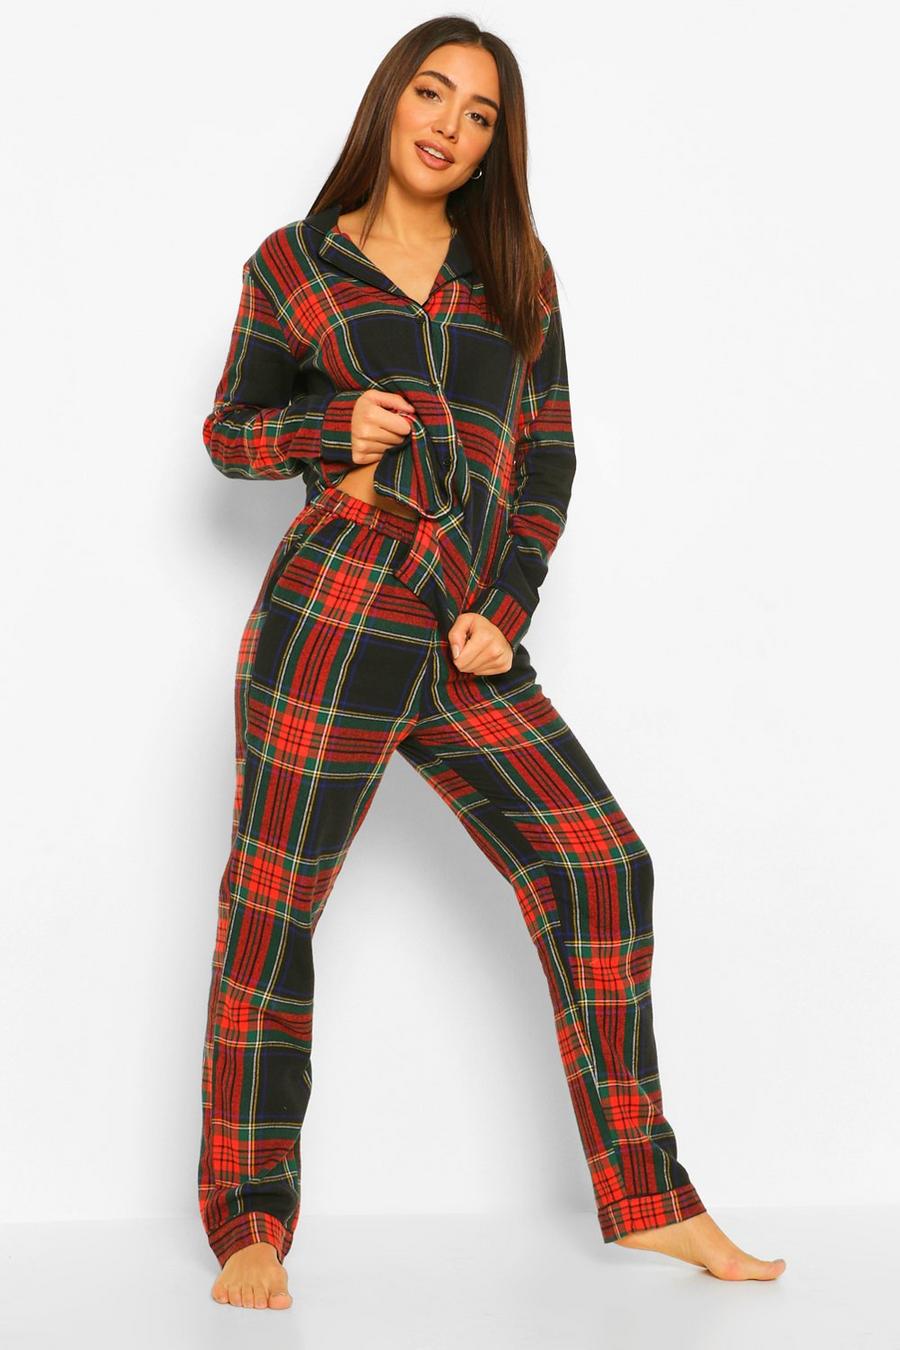 Red Flannel Check Print Christmas Pyjamas Pants Set